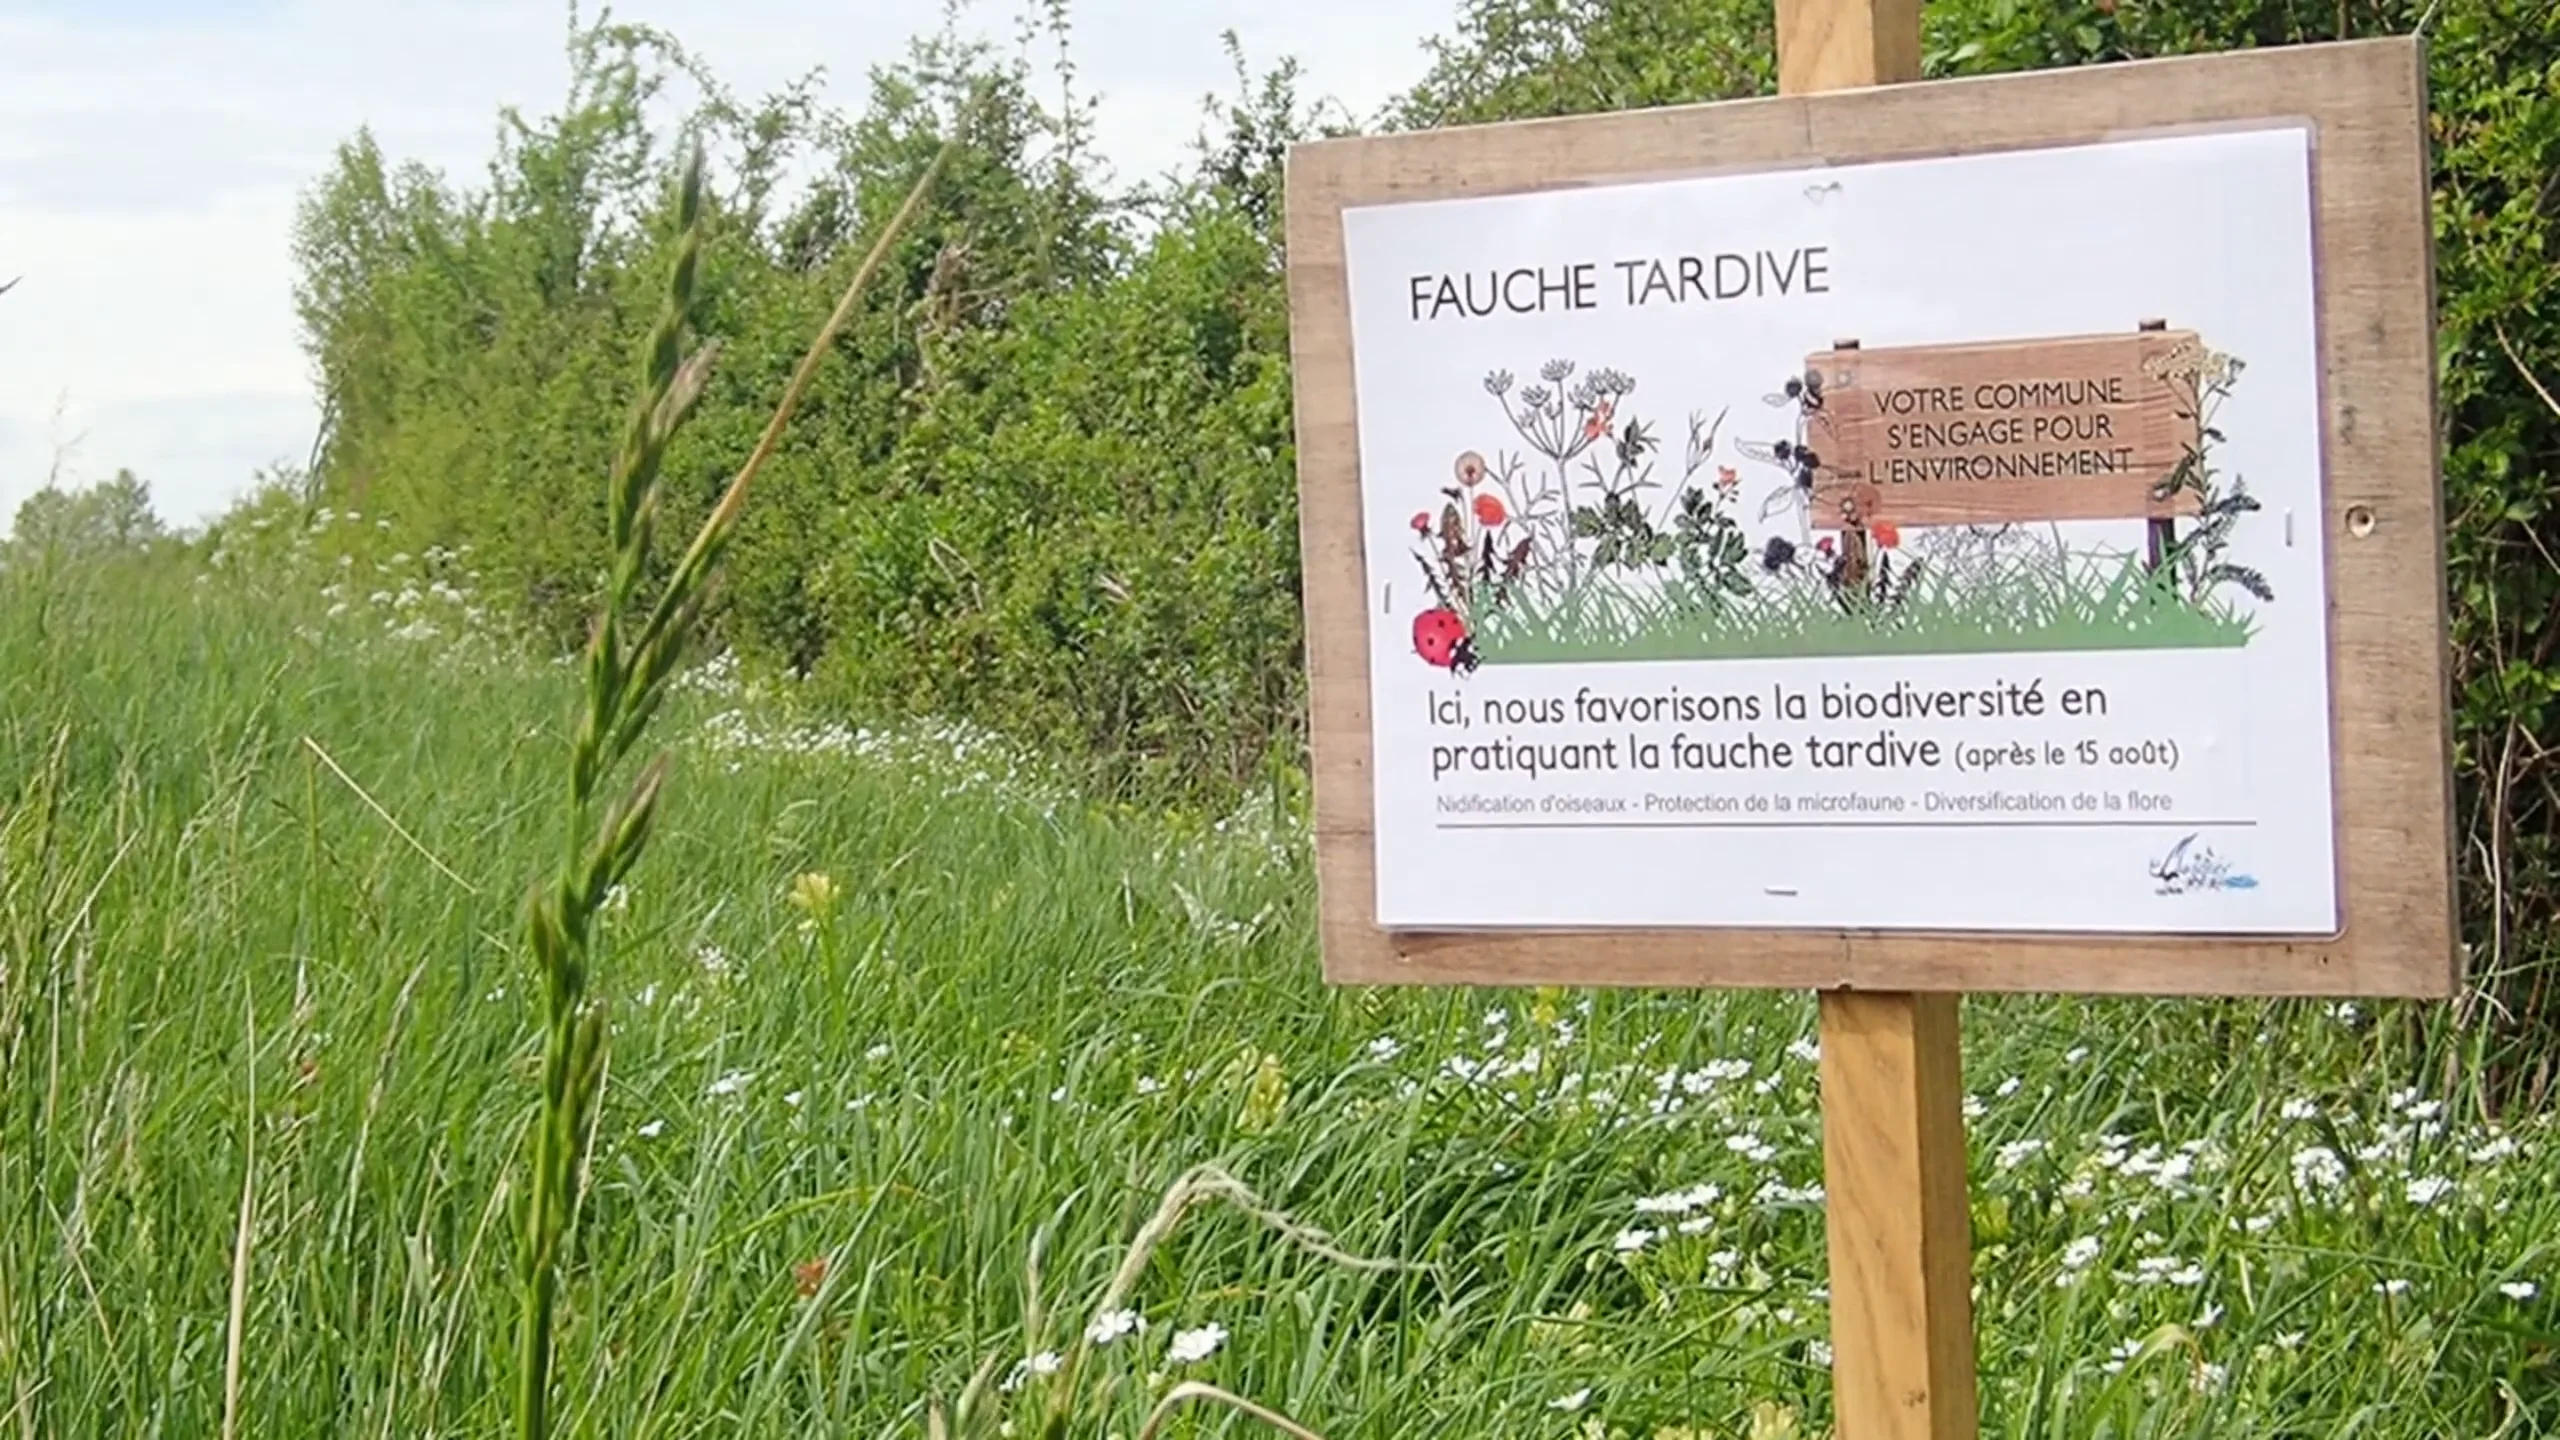 Fauche tardive & Sentier botanique - Magné (86) on Vimeo